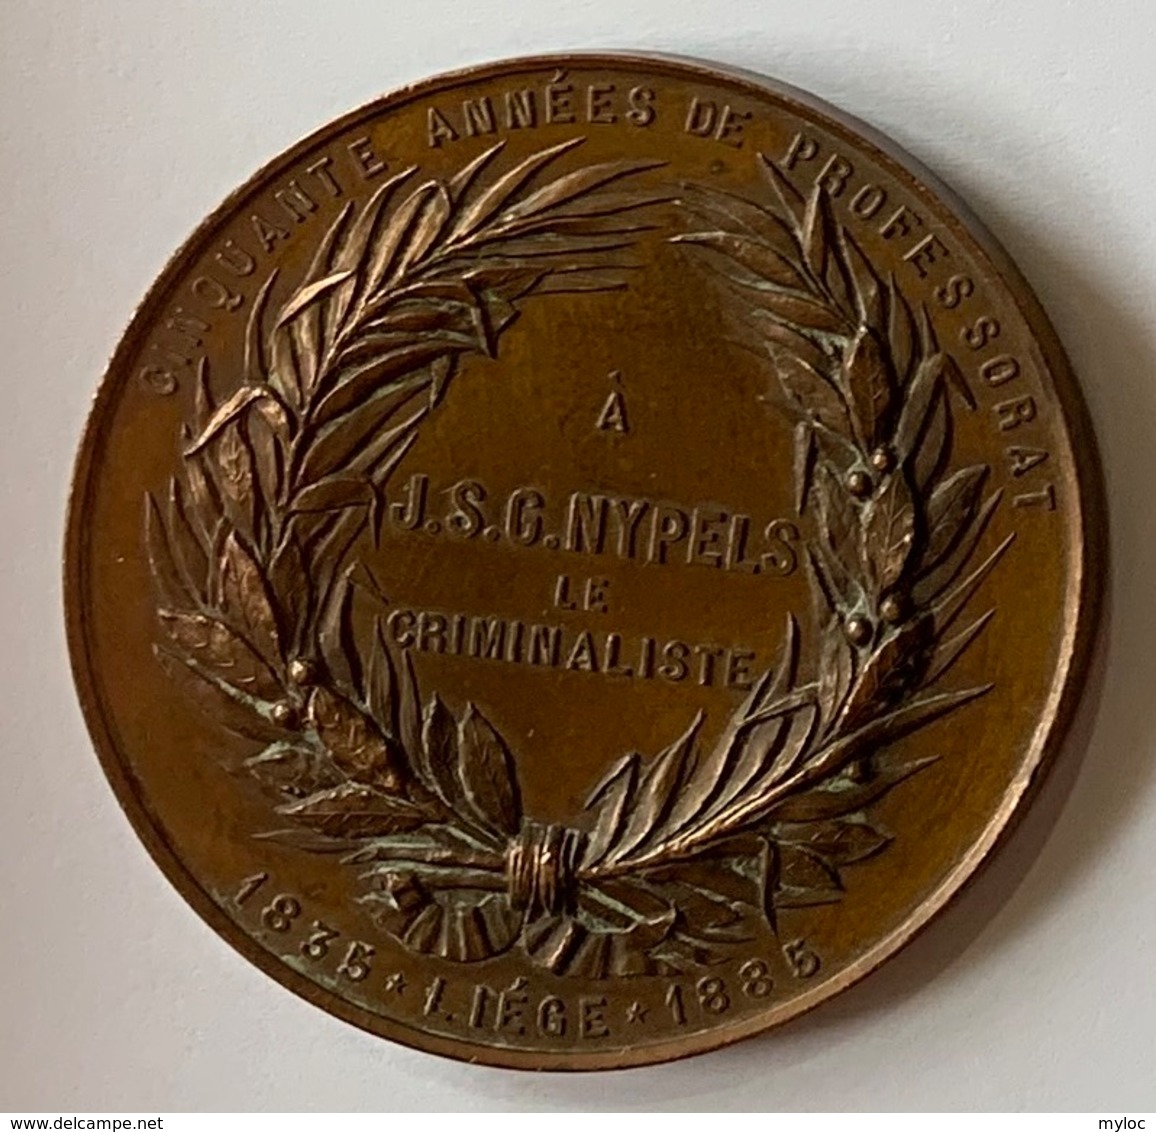 Médaille Bronze. Professeur J.S.G. Nypels. Criminalliste. Cinquante Années De Professorat. Liège 1835-1885. E. Geerts. - Professionals / Firms